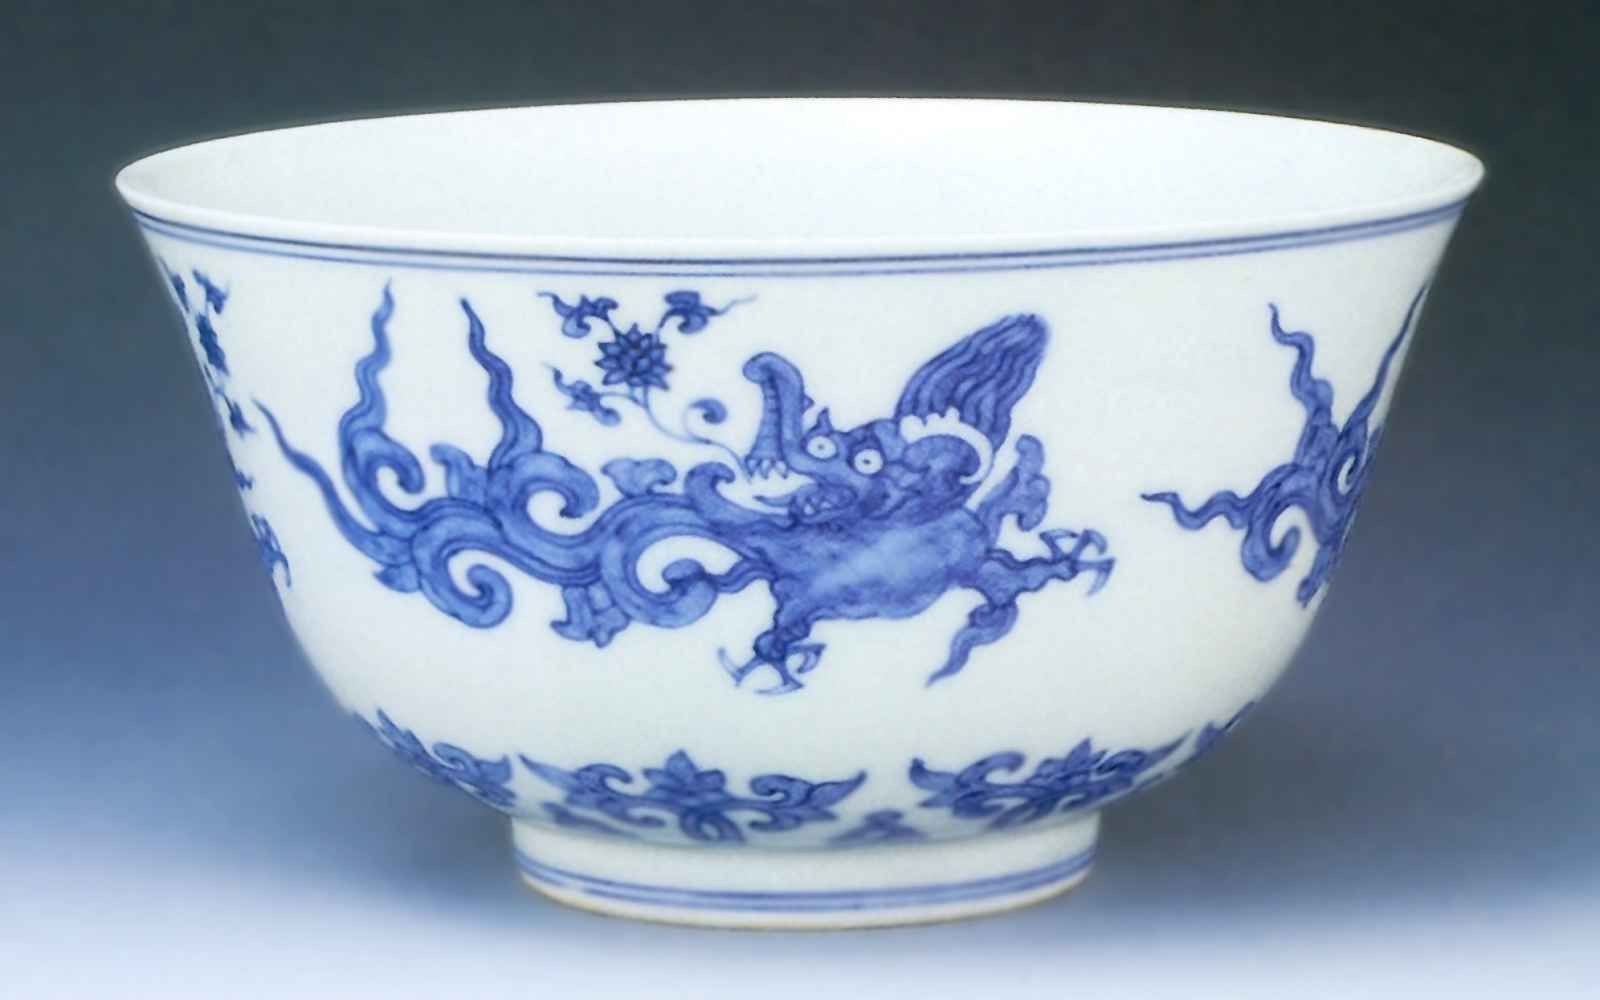 Чаша с изображением дракона <br>Вторая половина 15 века <br>Фарфор, глазурь <br>Шанхай, Городской музей 